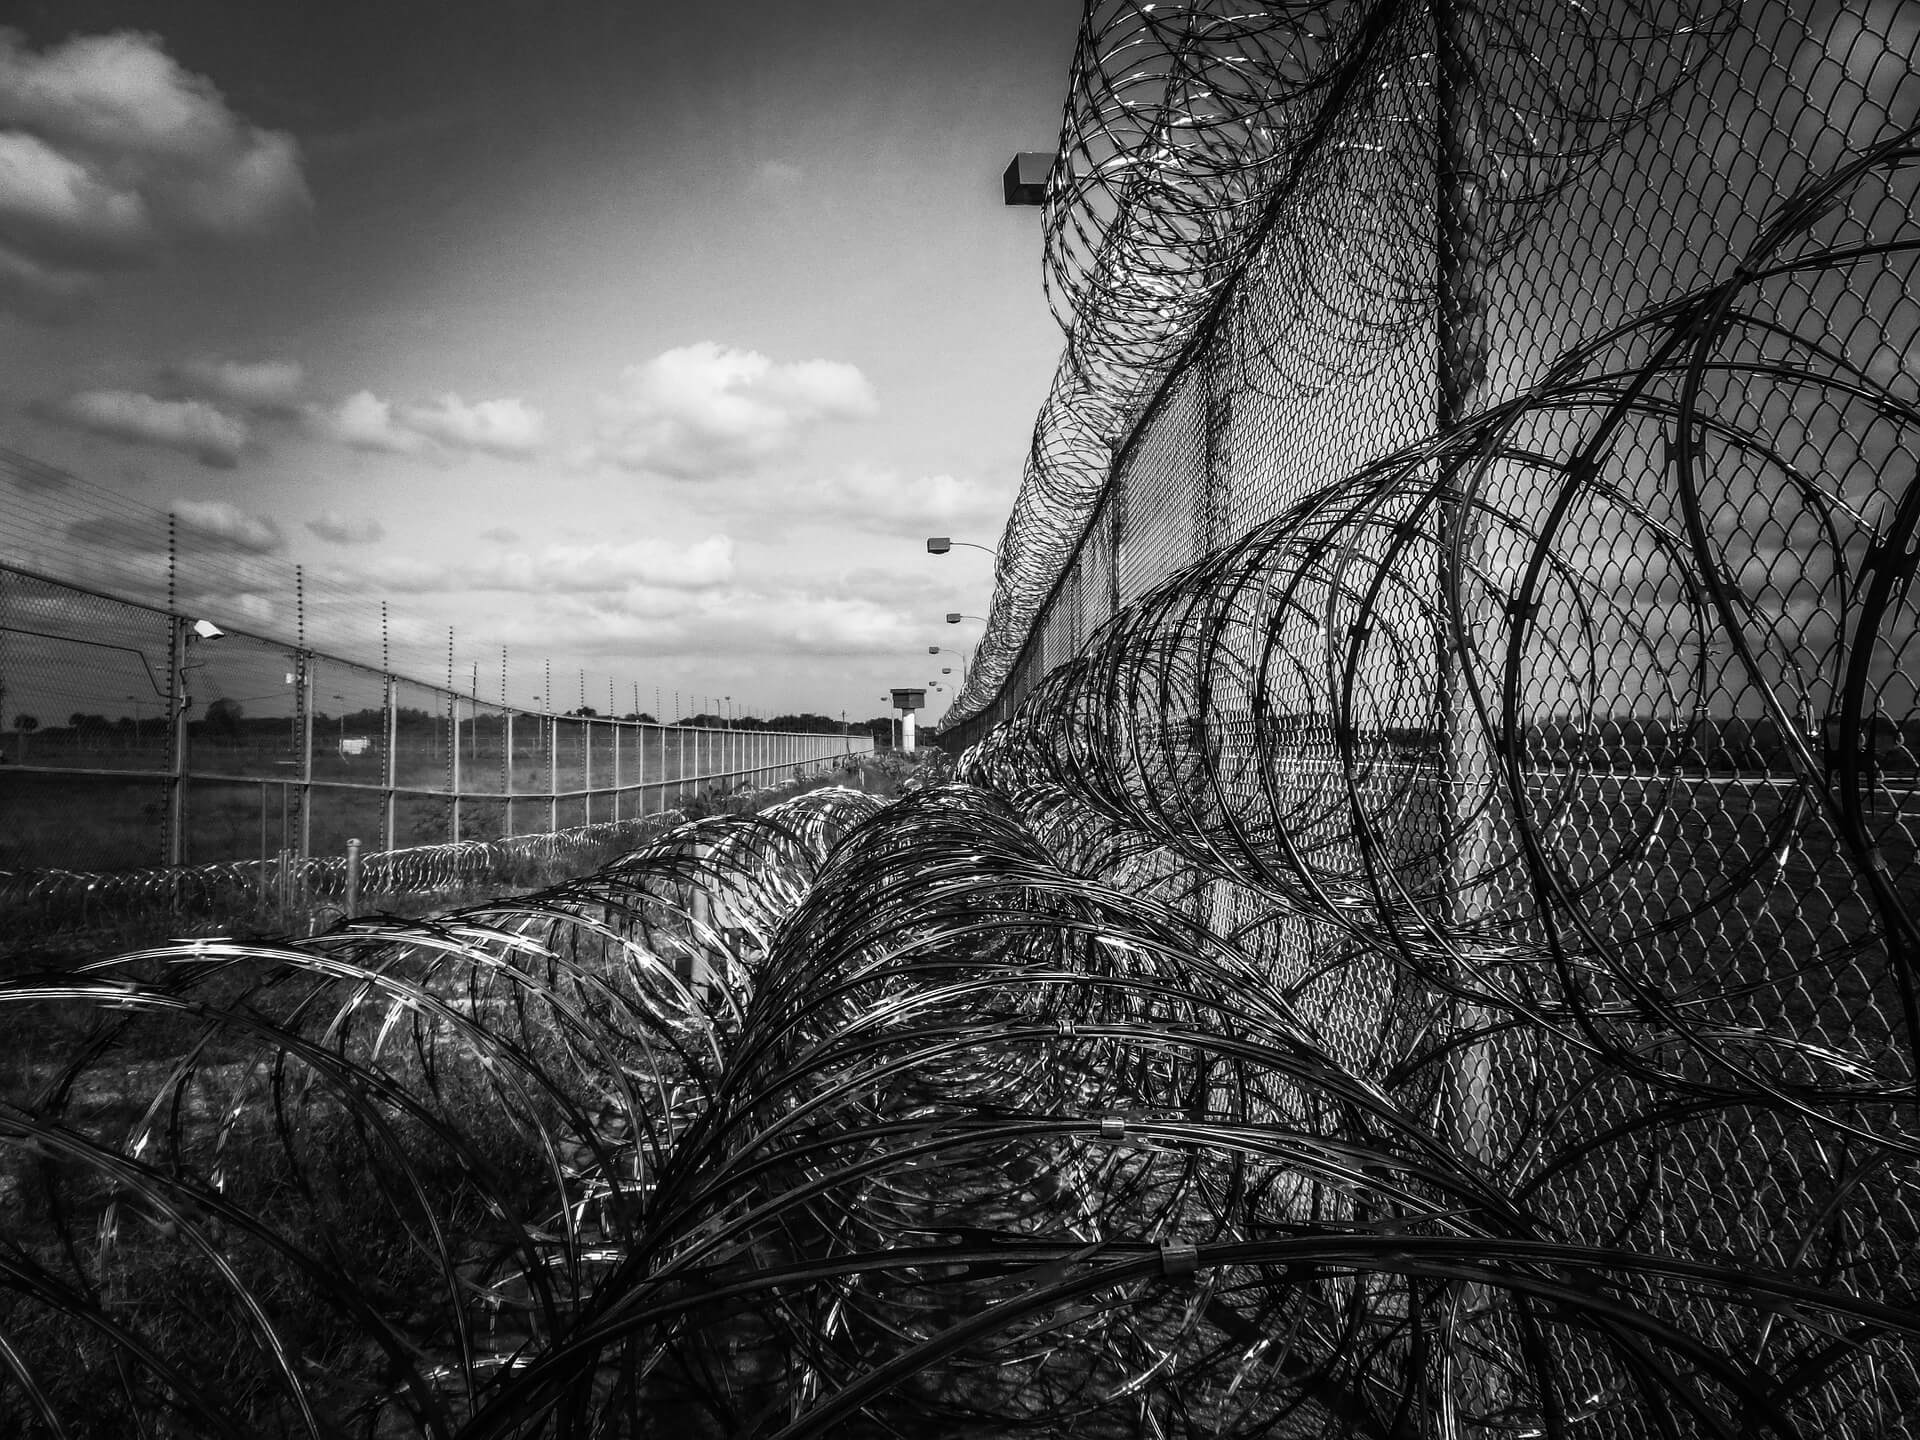 Grades de uma penitenciária | Respeito à integridade dos presos - Artigo Quinto